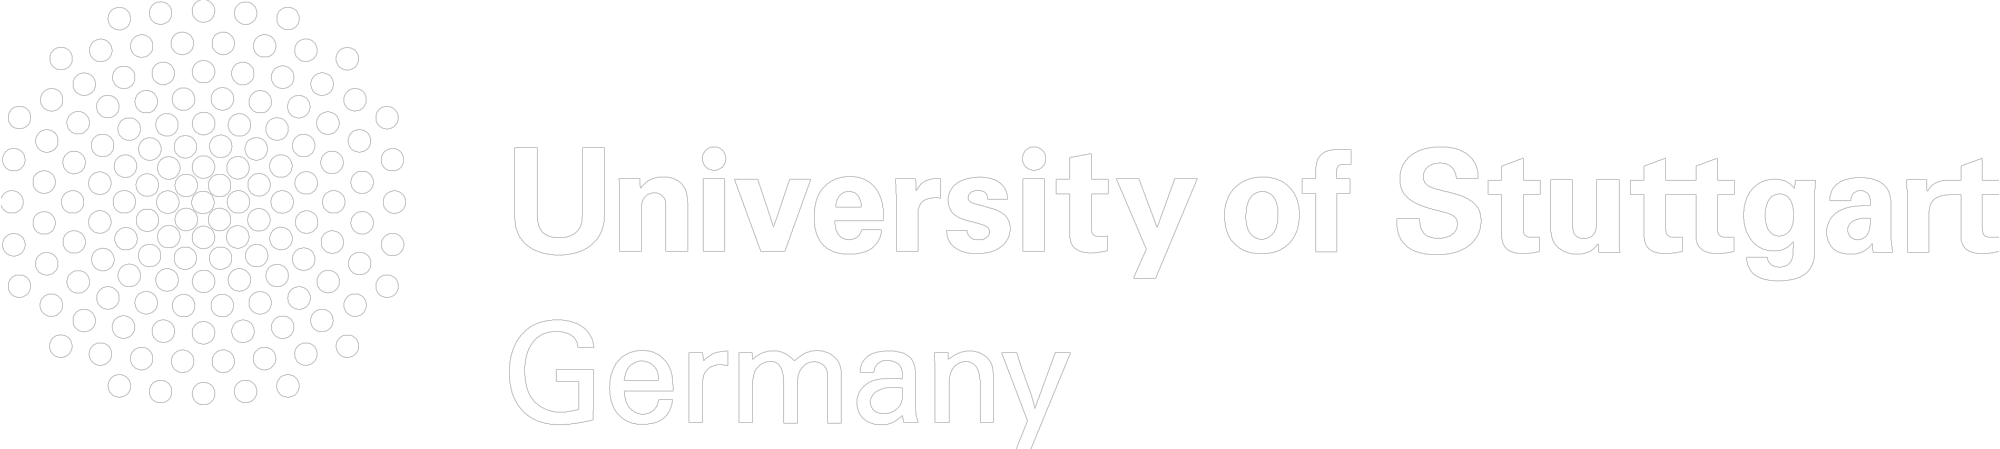 Black and white logo of University of Stuttgart